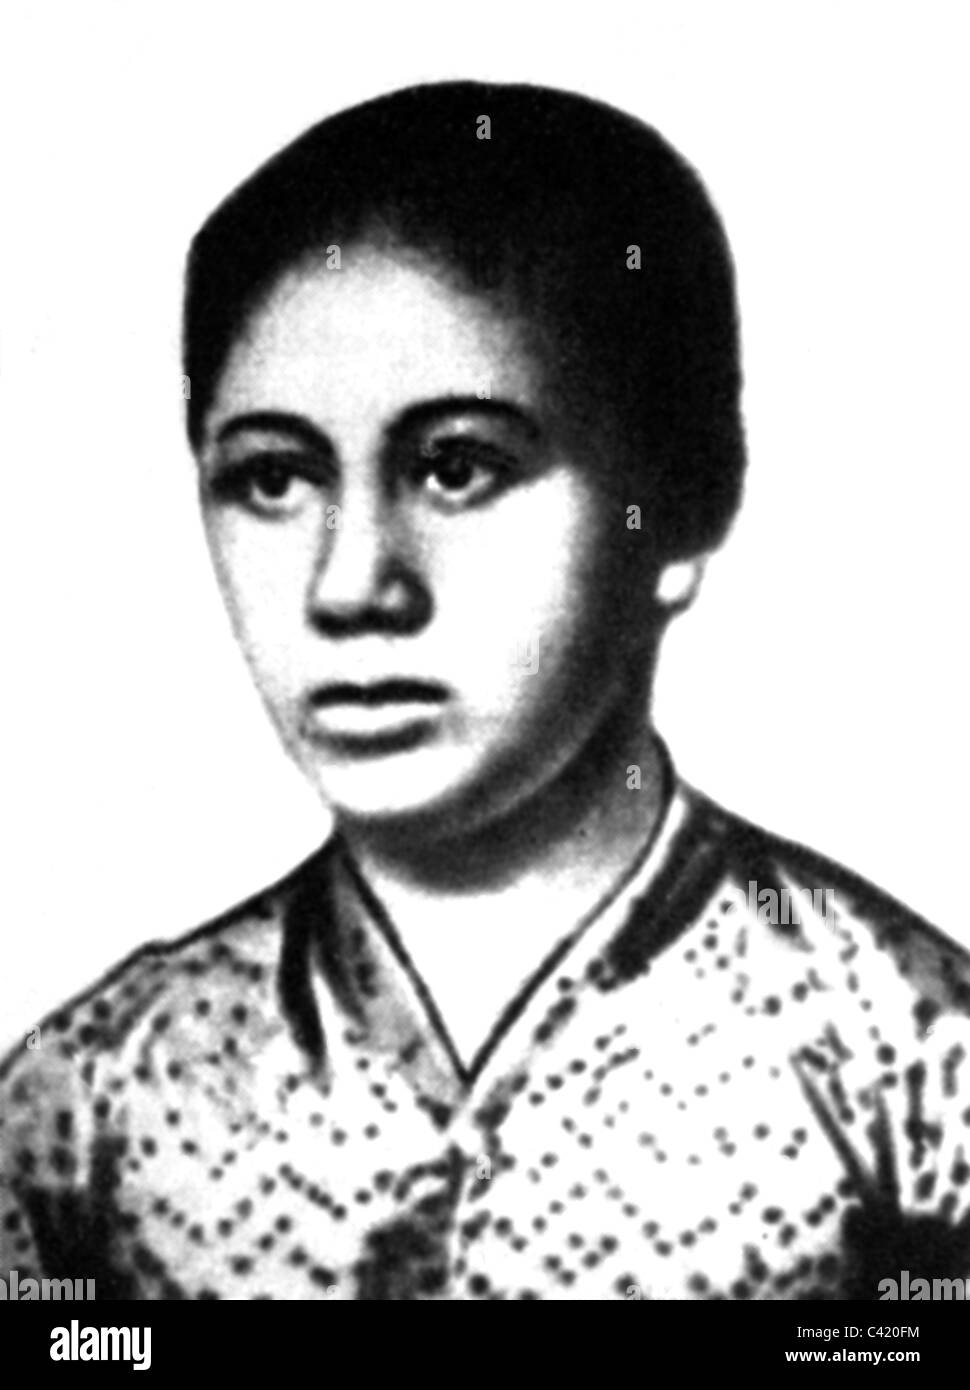 Kartini, Raden Ayu, 21.4.1879 - 17.9.1904, attivista per i diritti delle donne indonesiane, ritratto, circa 1900, Foto Stock